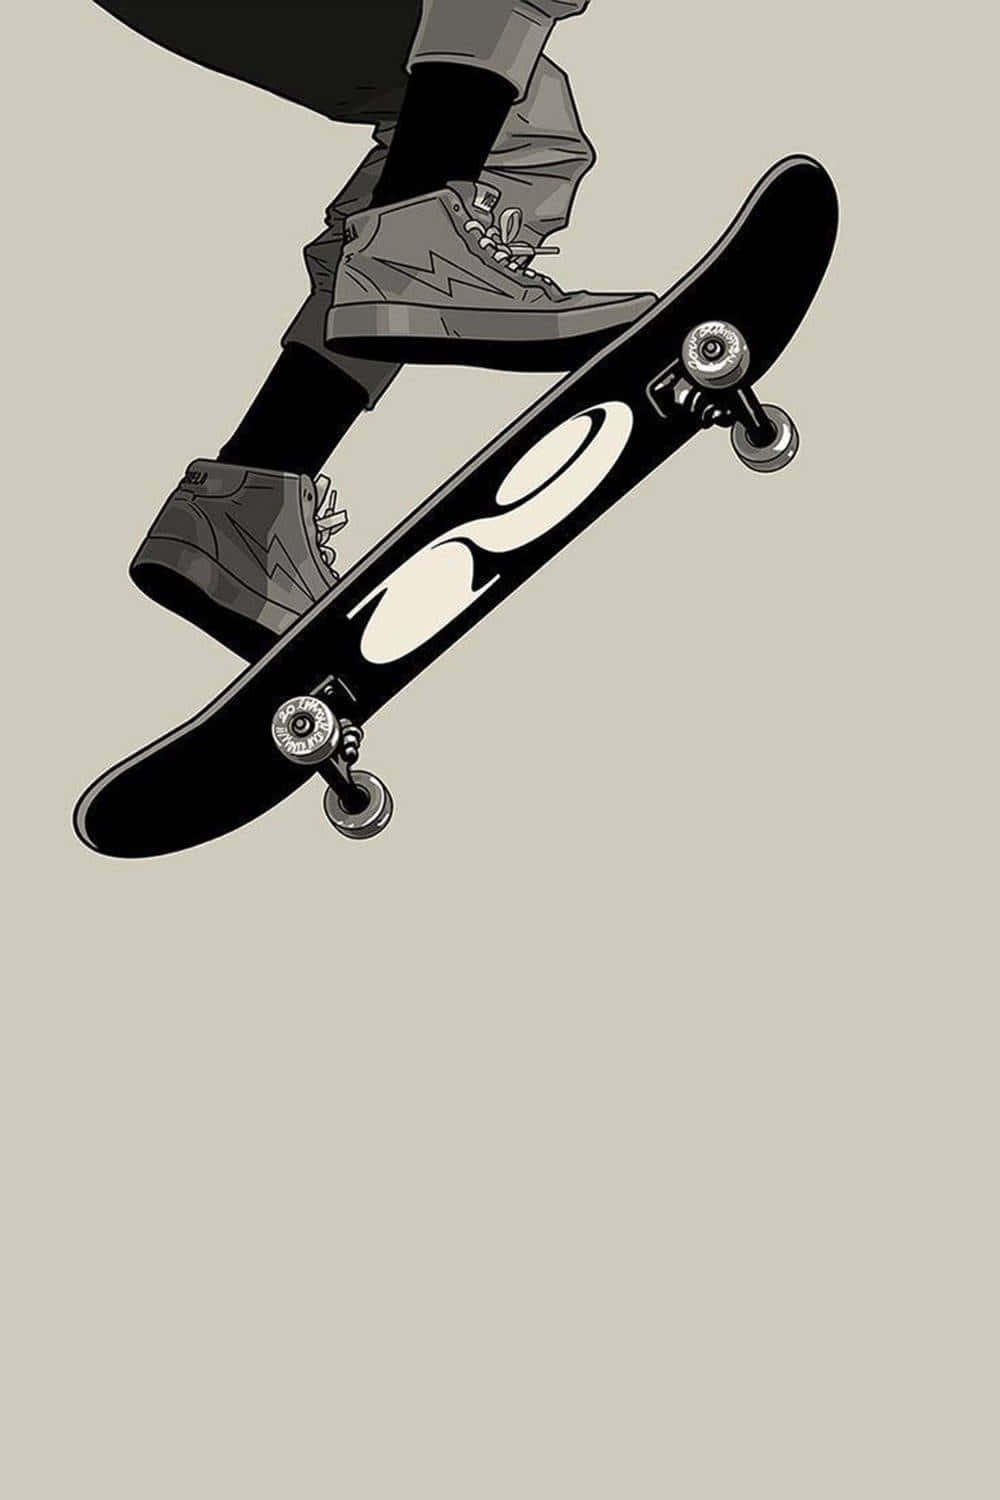 Skateboard Mid Flip Aesthetic Wallpaper